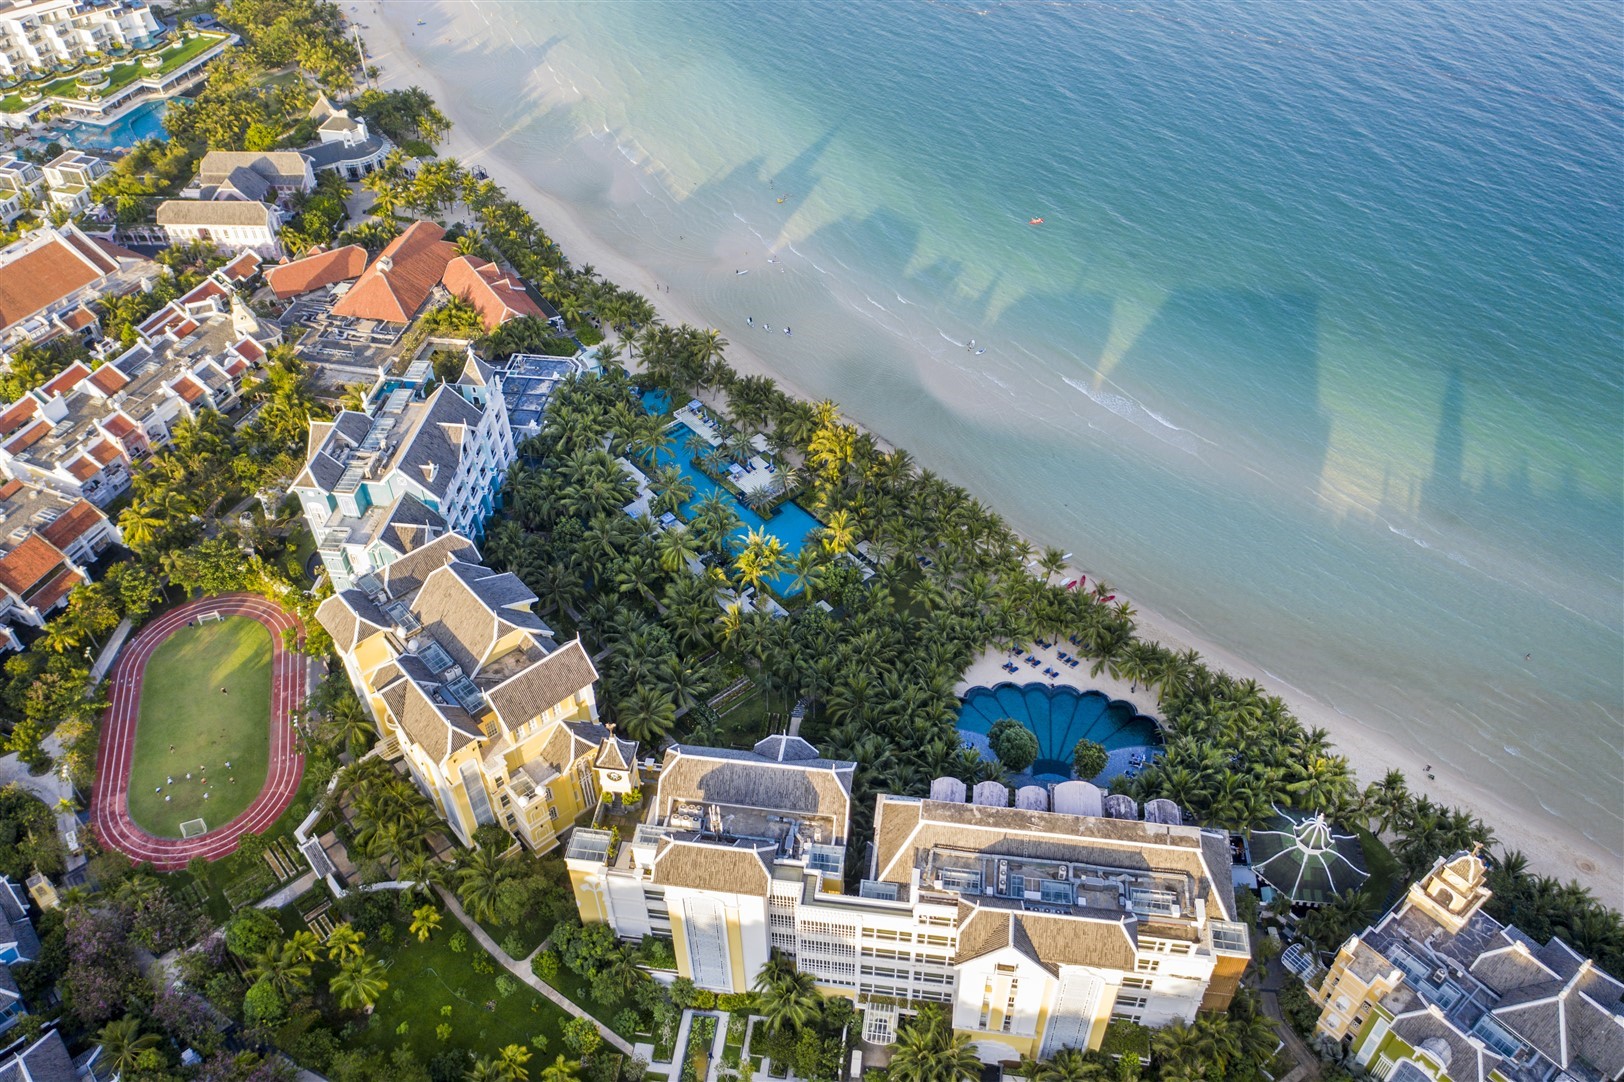 JW Marriott Phu Quoc Emerald Bay- Biểu tượng cho du lịch hạng sang của Phú Quốc